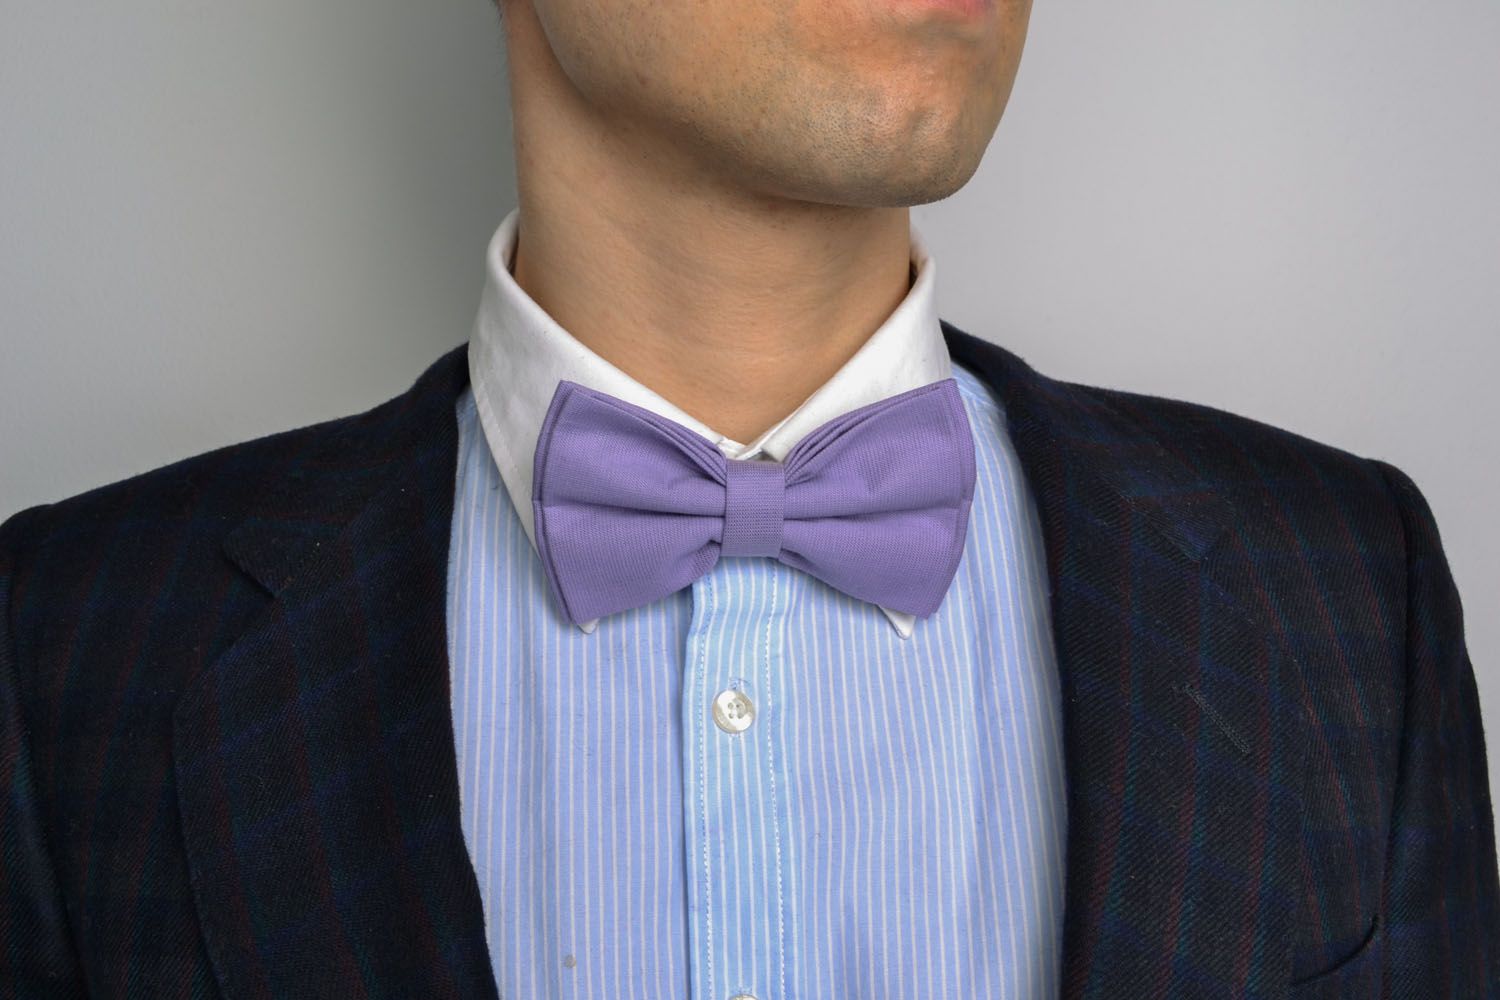 Purple bow tie for suit photo 1